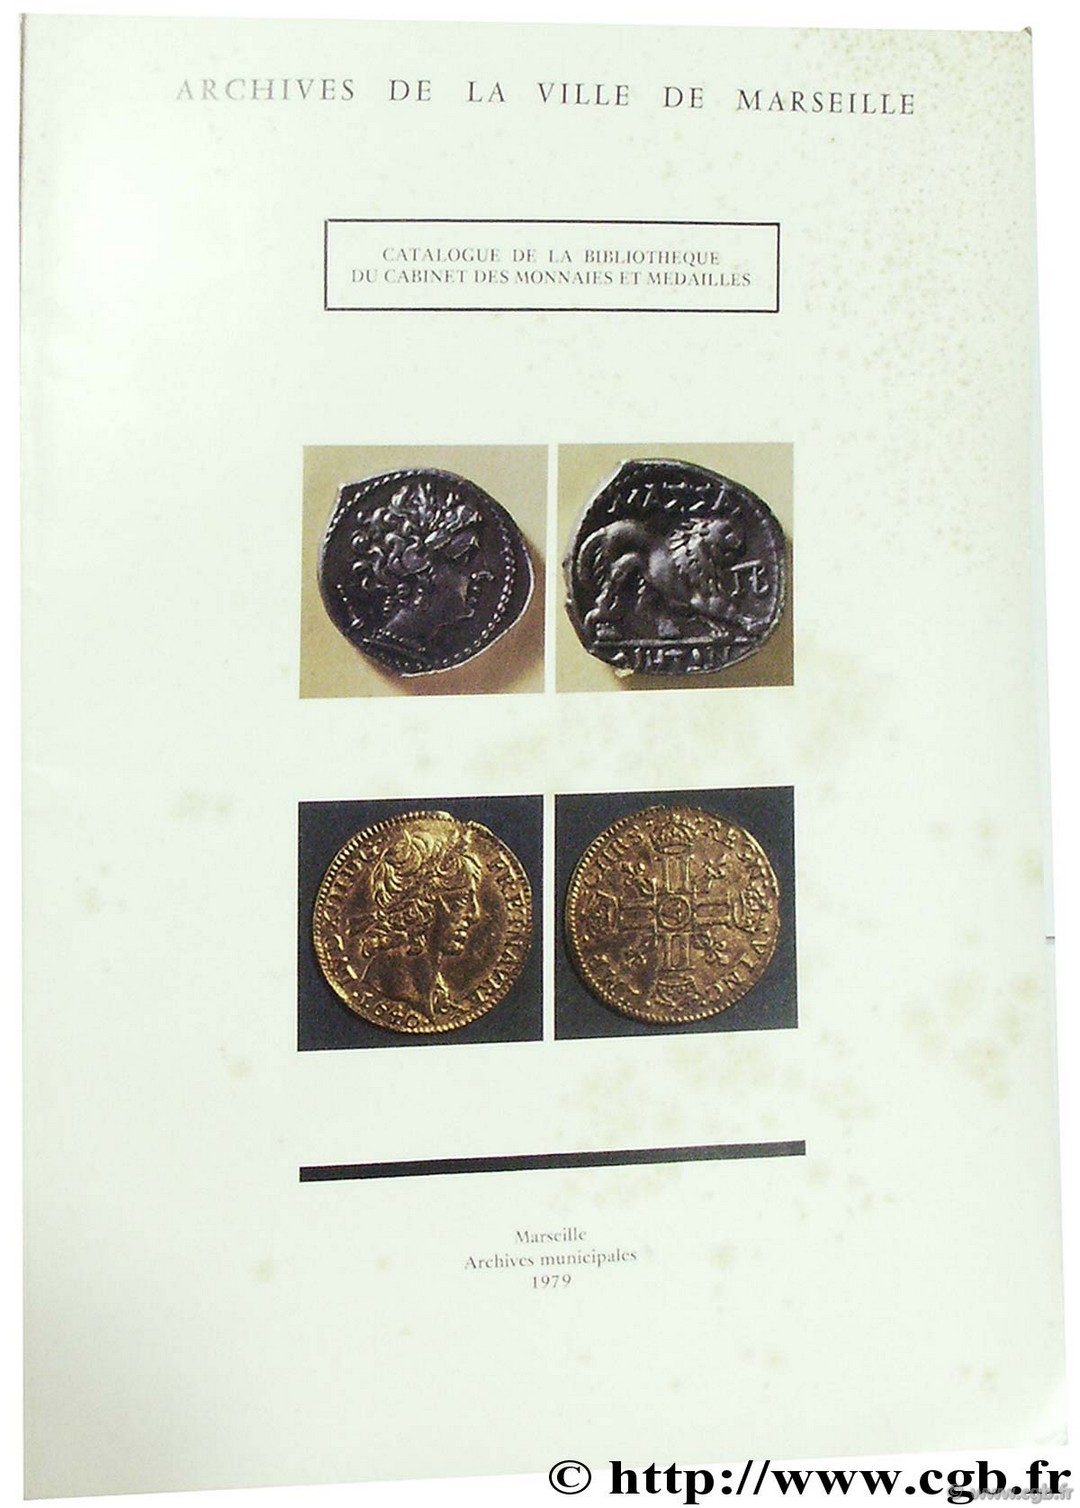 Archives municipales de la ville de Marseille. Catalogue de la Bibliothèque du cabinet des monnaies et médailles 